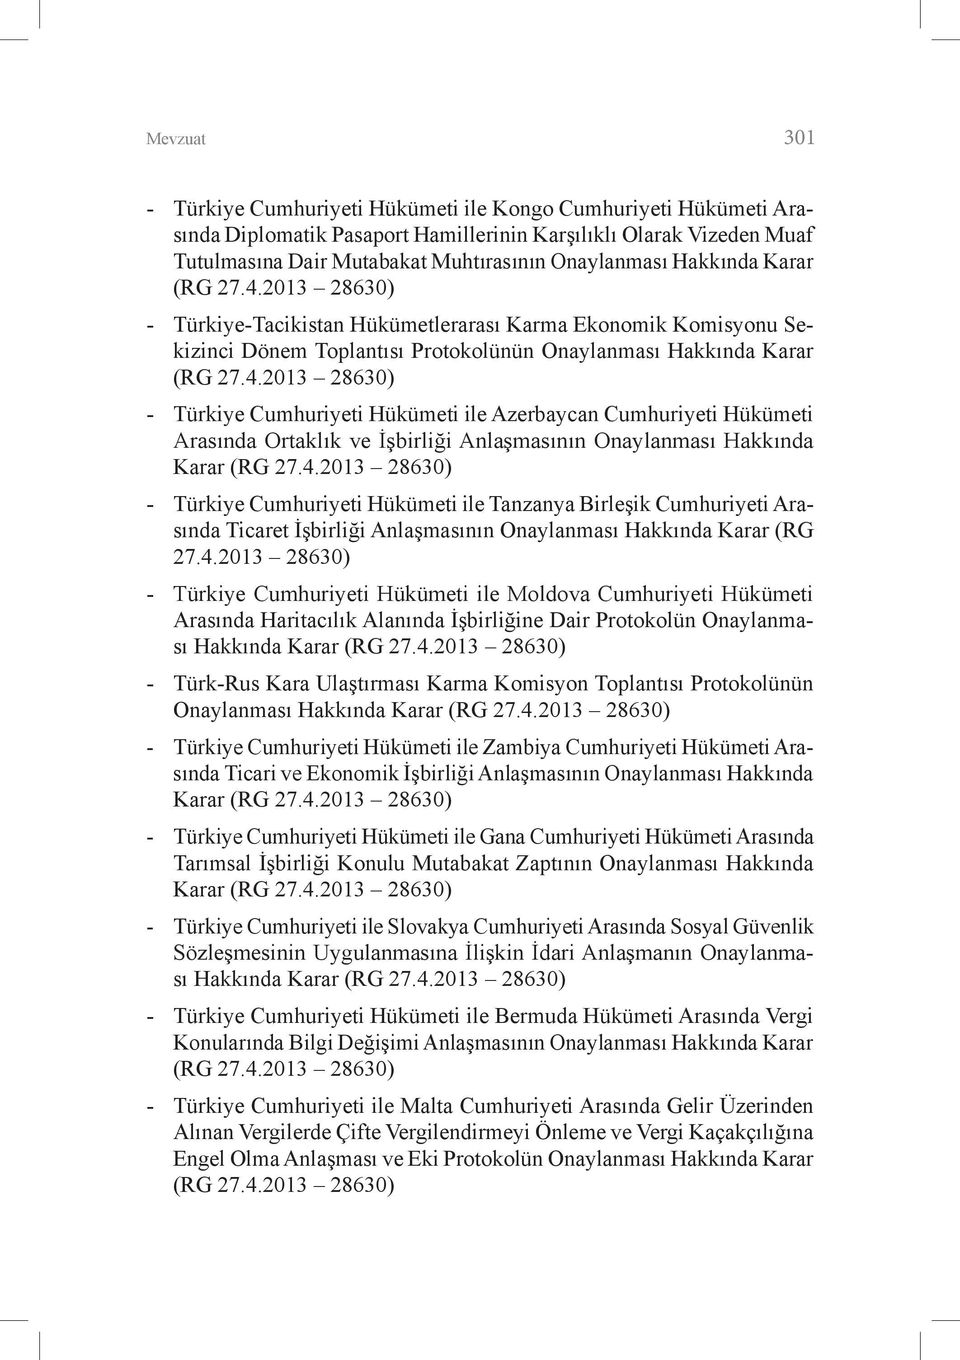 4.2013 28630) - Türkiye Cumhuriyeti Hükümeti ile Tanzanya Birleşik Cumhuriyeti Arasında Ticaret İşbirliği Anlaşmasının Onaylanması Hakkında Karar (RG 27.4.2013 28630) - Türkiye Cumhuriyeti Hükümeti ile Moldova Cumhuriyeti Hükümeti Arasında Haritacılık Alanında İşbirliğine Dair Protokolün Onaylanması Hakkında Karar (RG 27.